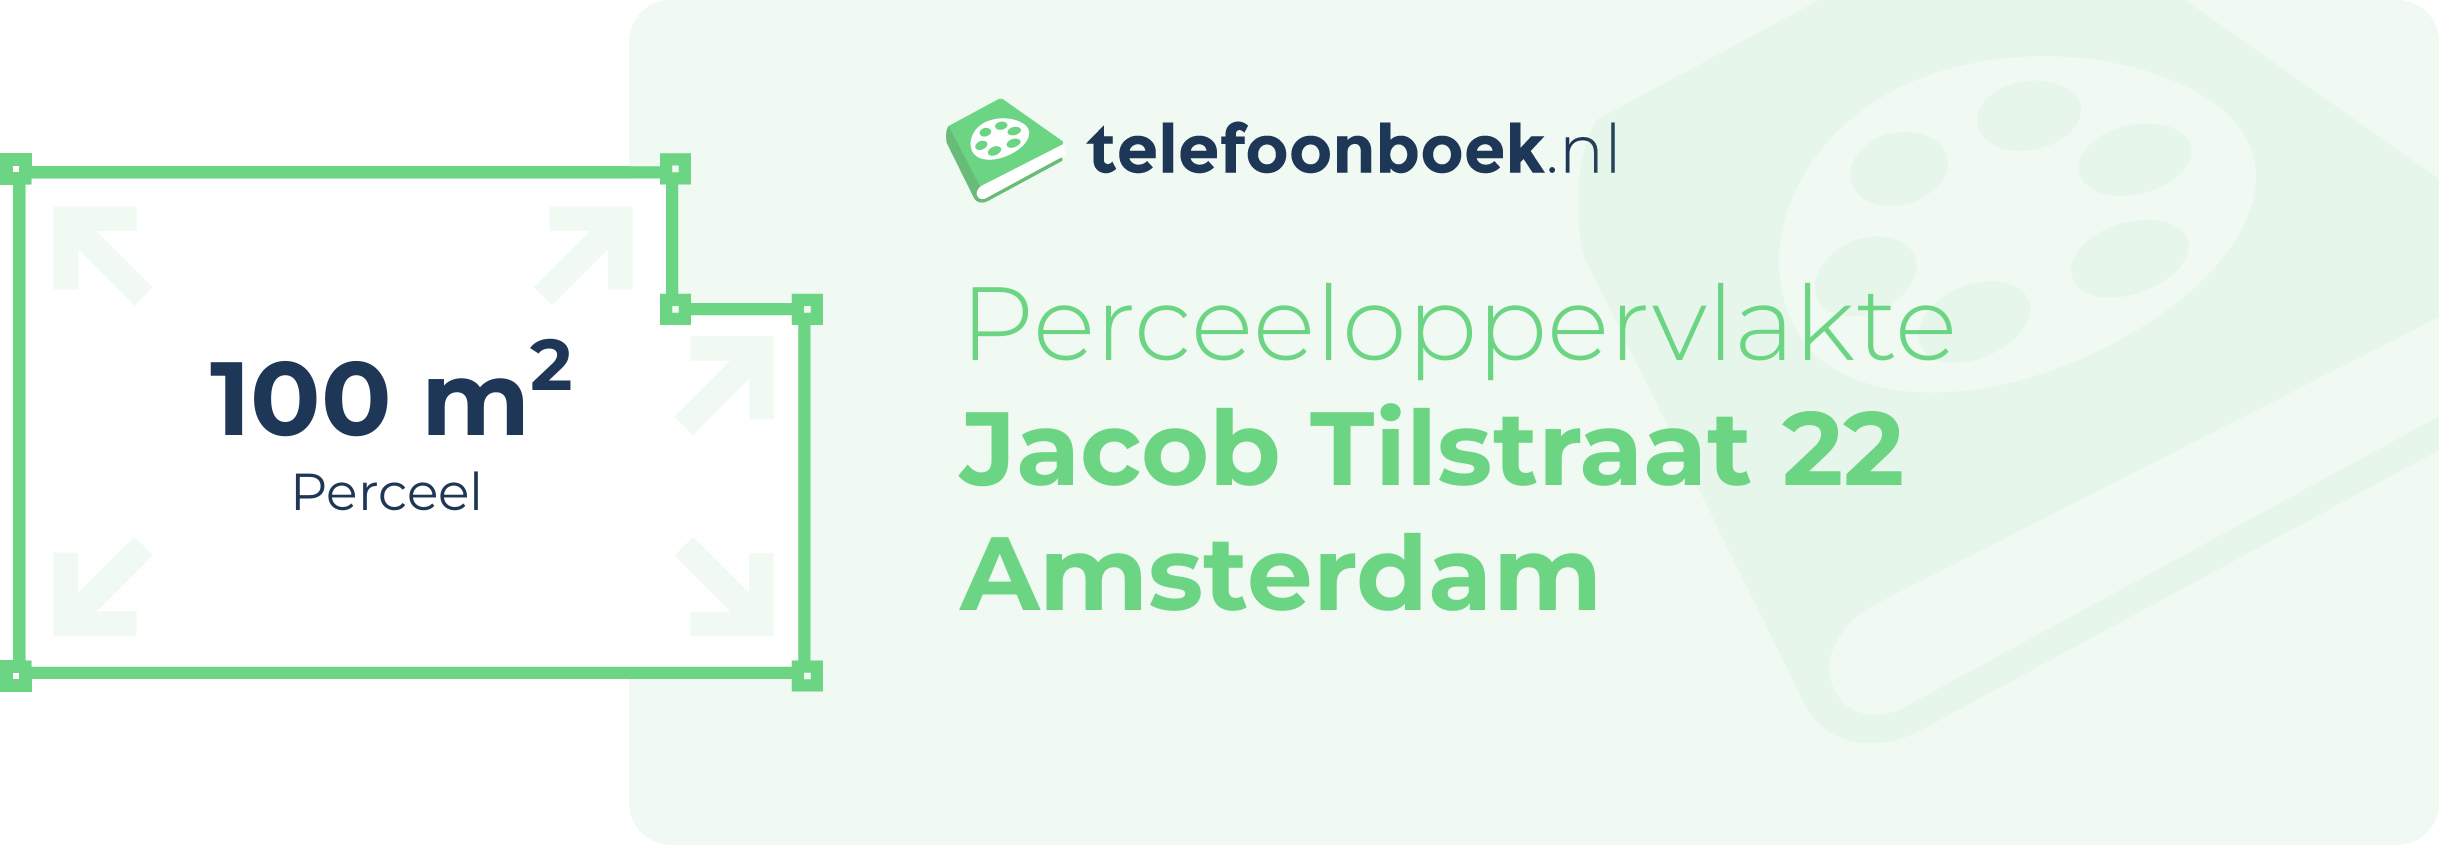 Perceeloppervlakte Jacob Tilstraat 22 Amsterdam